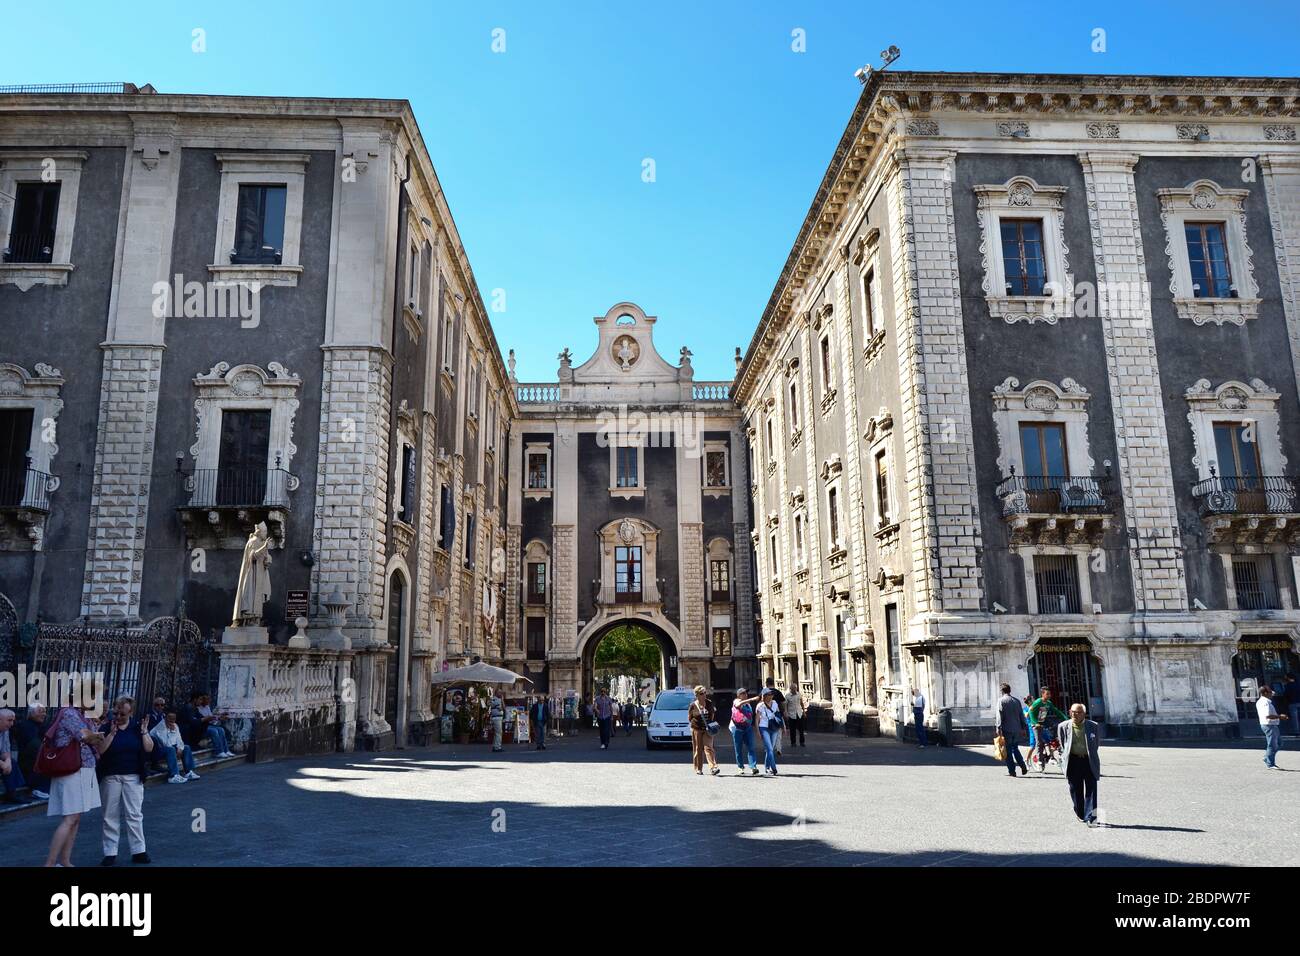 Antico edificio con pareti nere e colonne bianche, mattoni e finestre in una piazza italiana in una giornata di sole Foto Stock